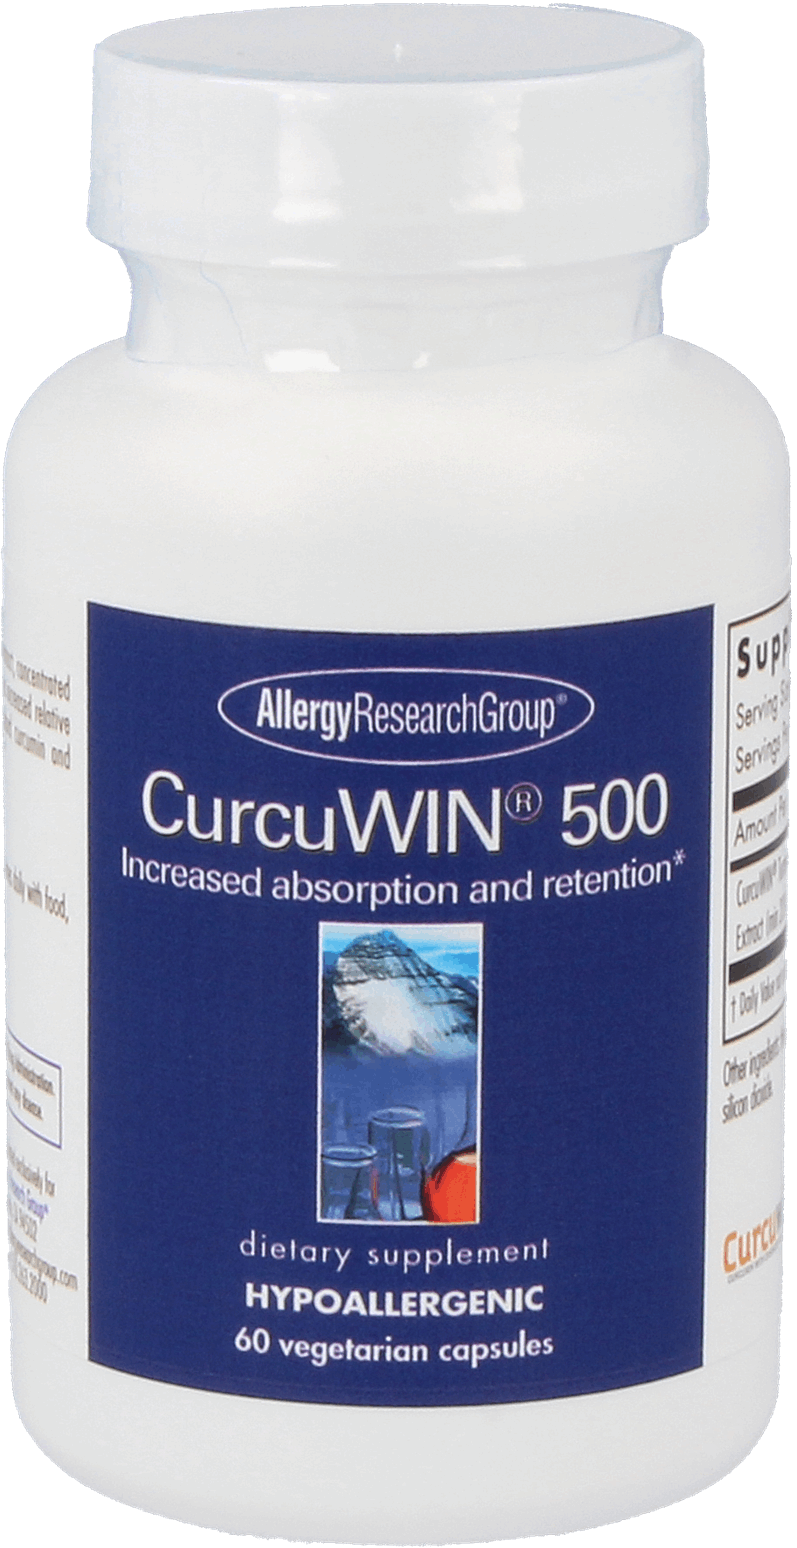 CurcuWIN® 500 